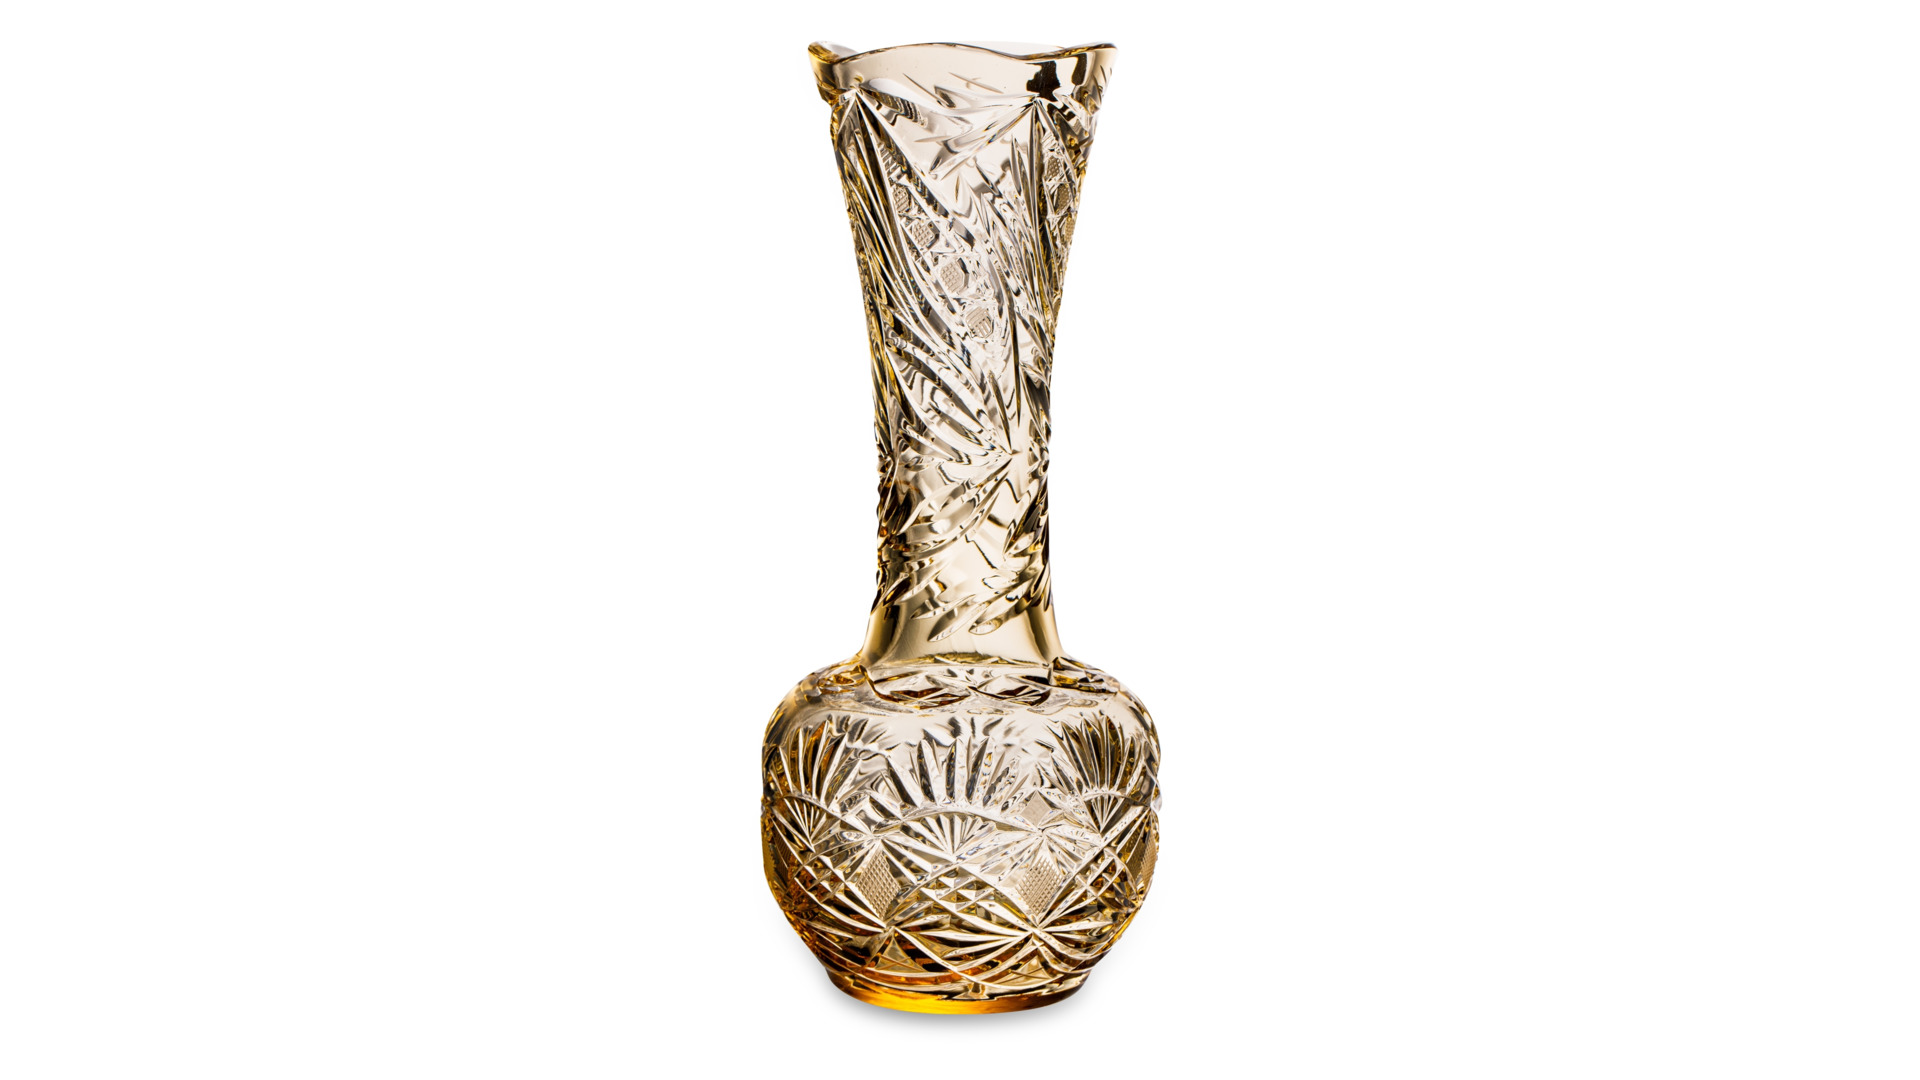 Ваза для цветов ГХЗ Лампа Аладдина 24,9 см, хрусталь, янтарная